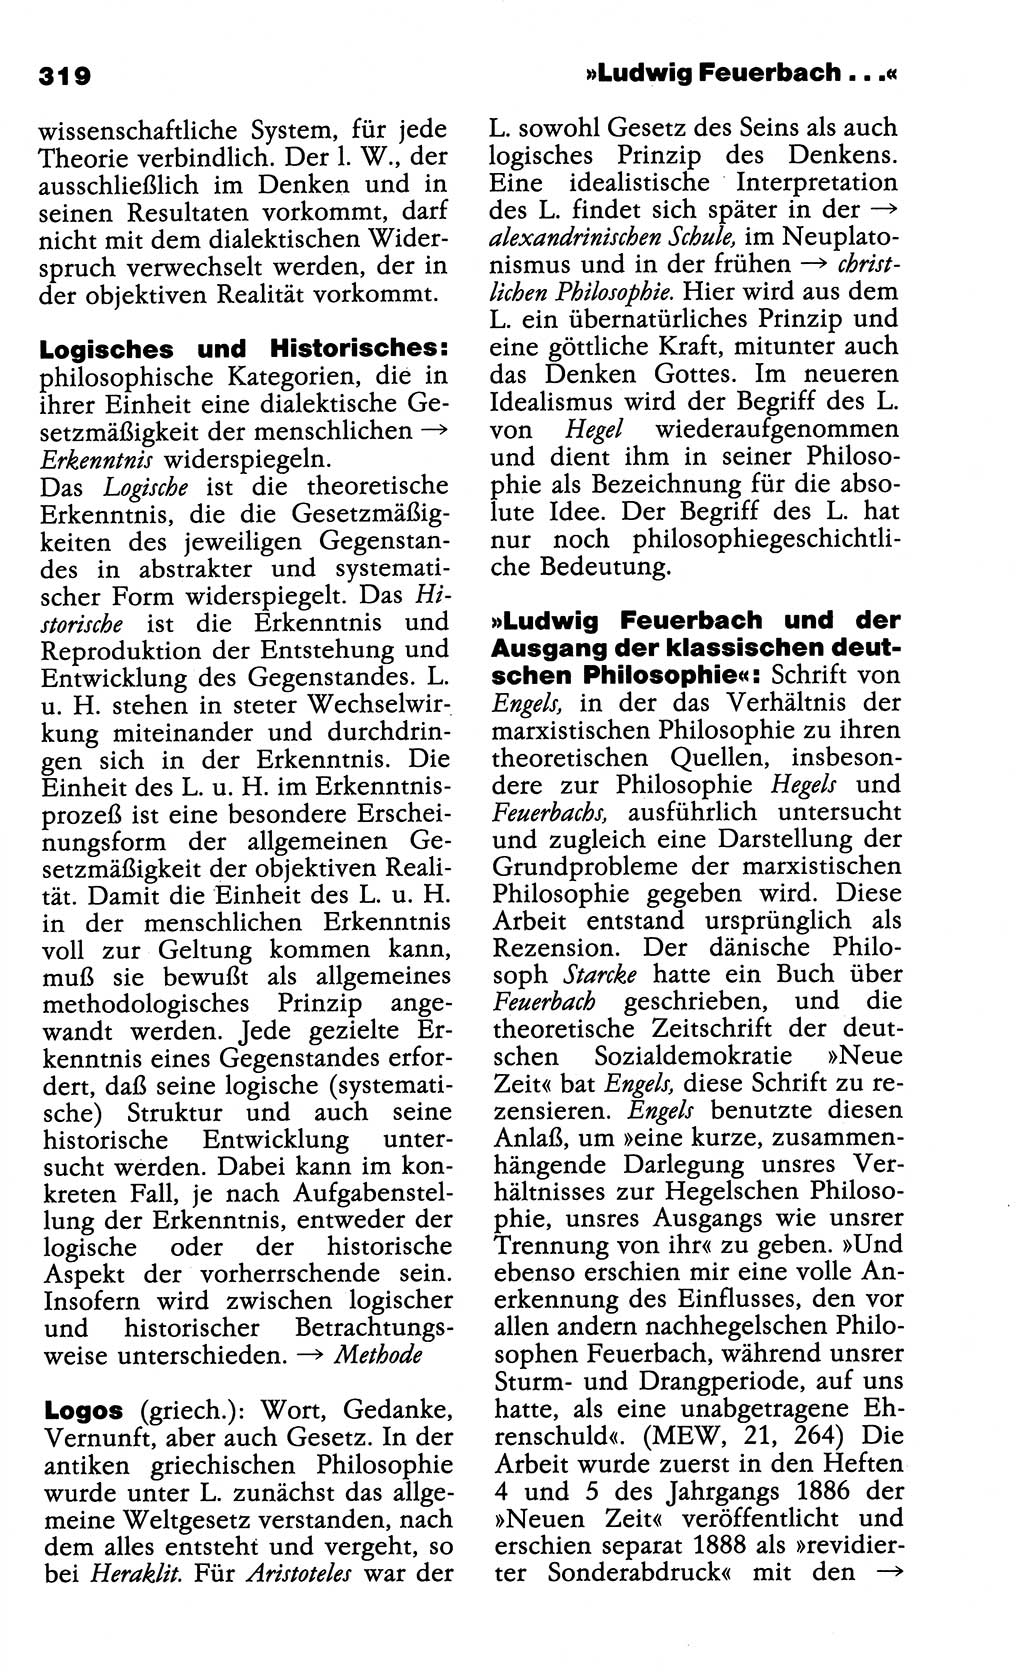 Wörterbuch der marxistisch-leninistischen Philosophie [Deutsche Demokratische Republik (DDR)] 1985, Seite 319 (Wb. ML Phil. DDR 1985, S. 319)